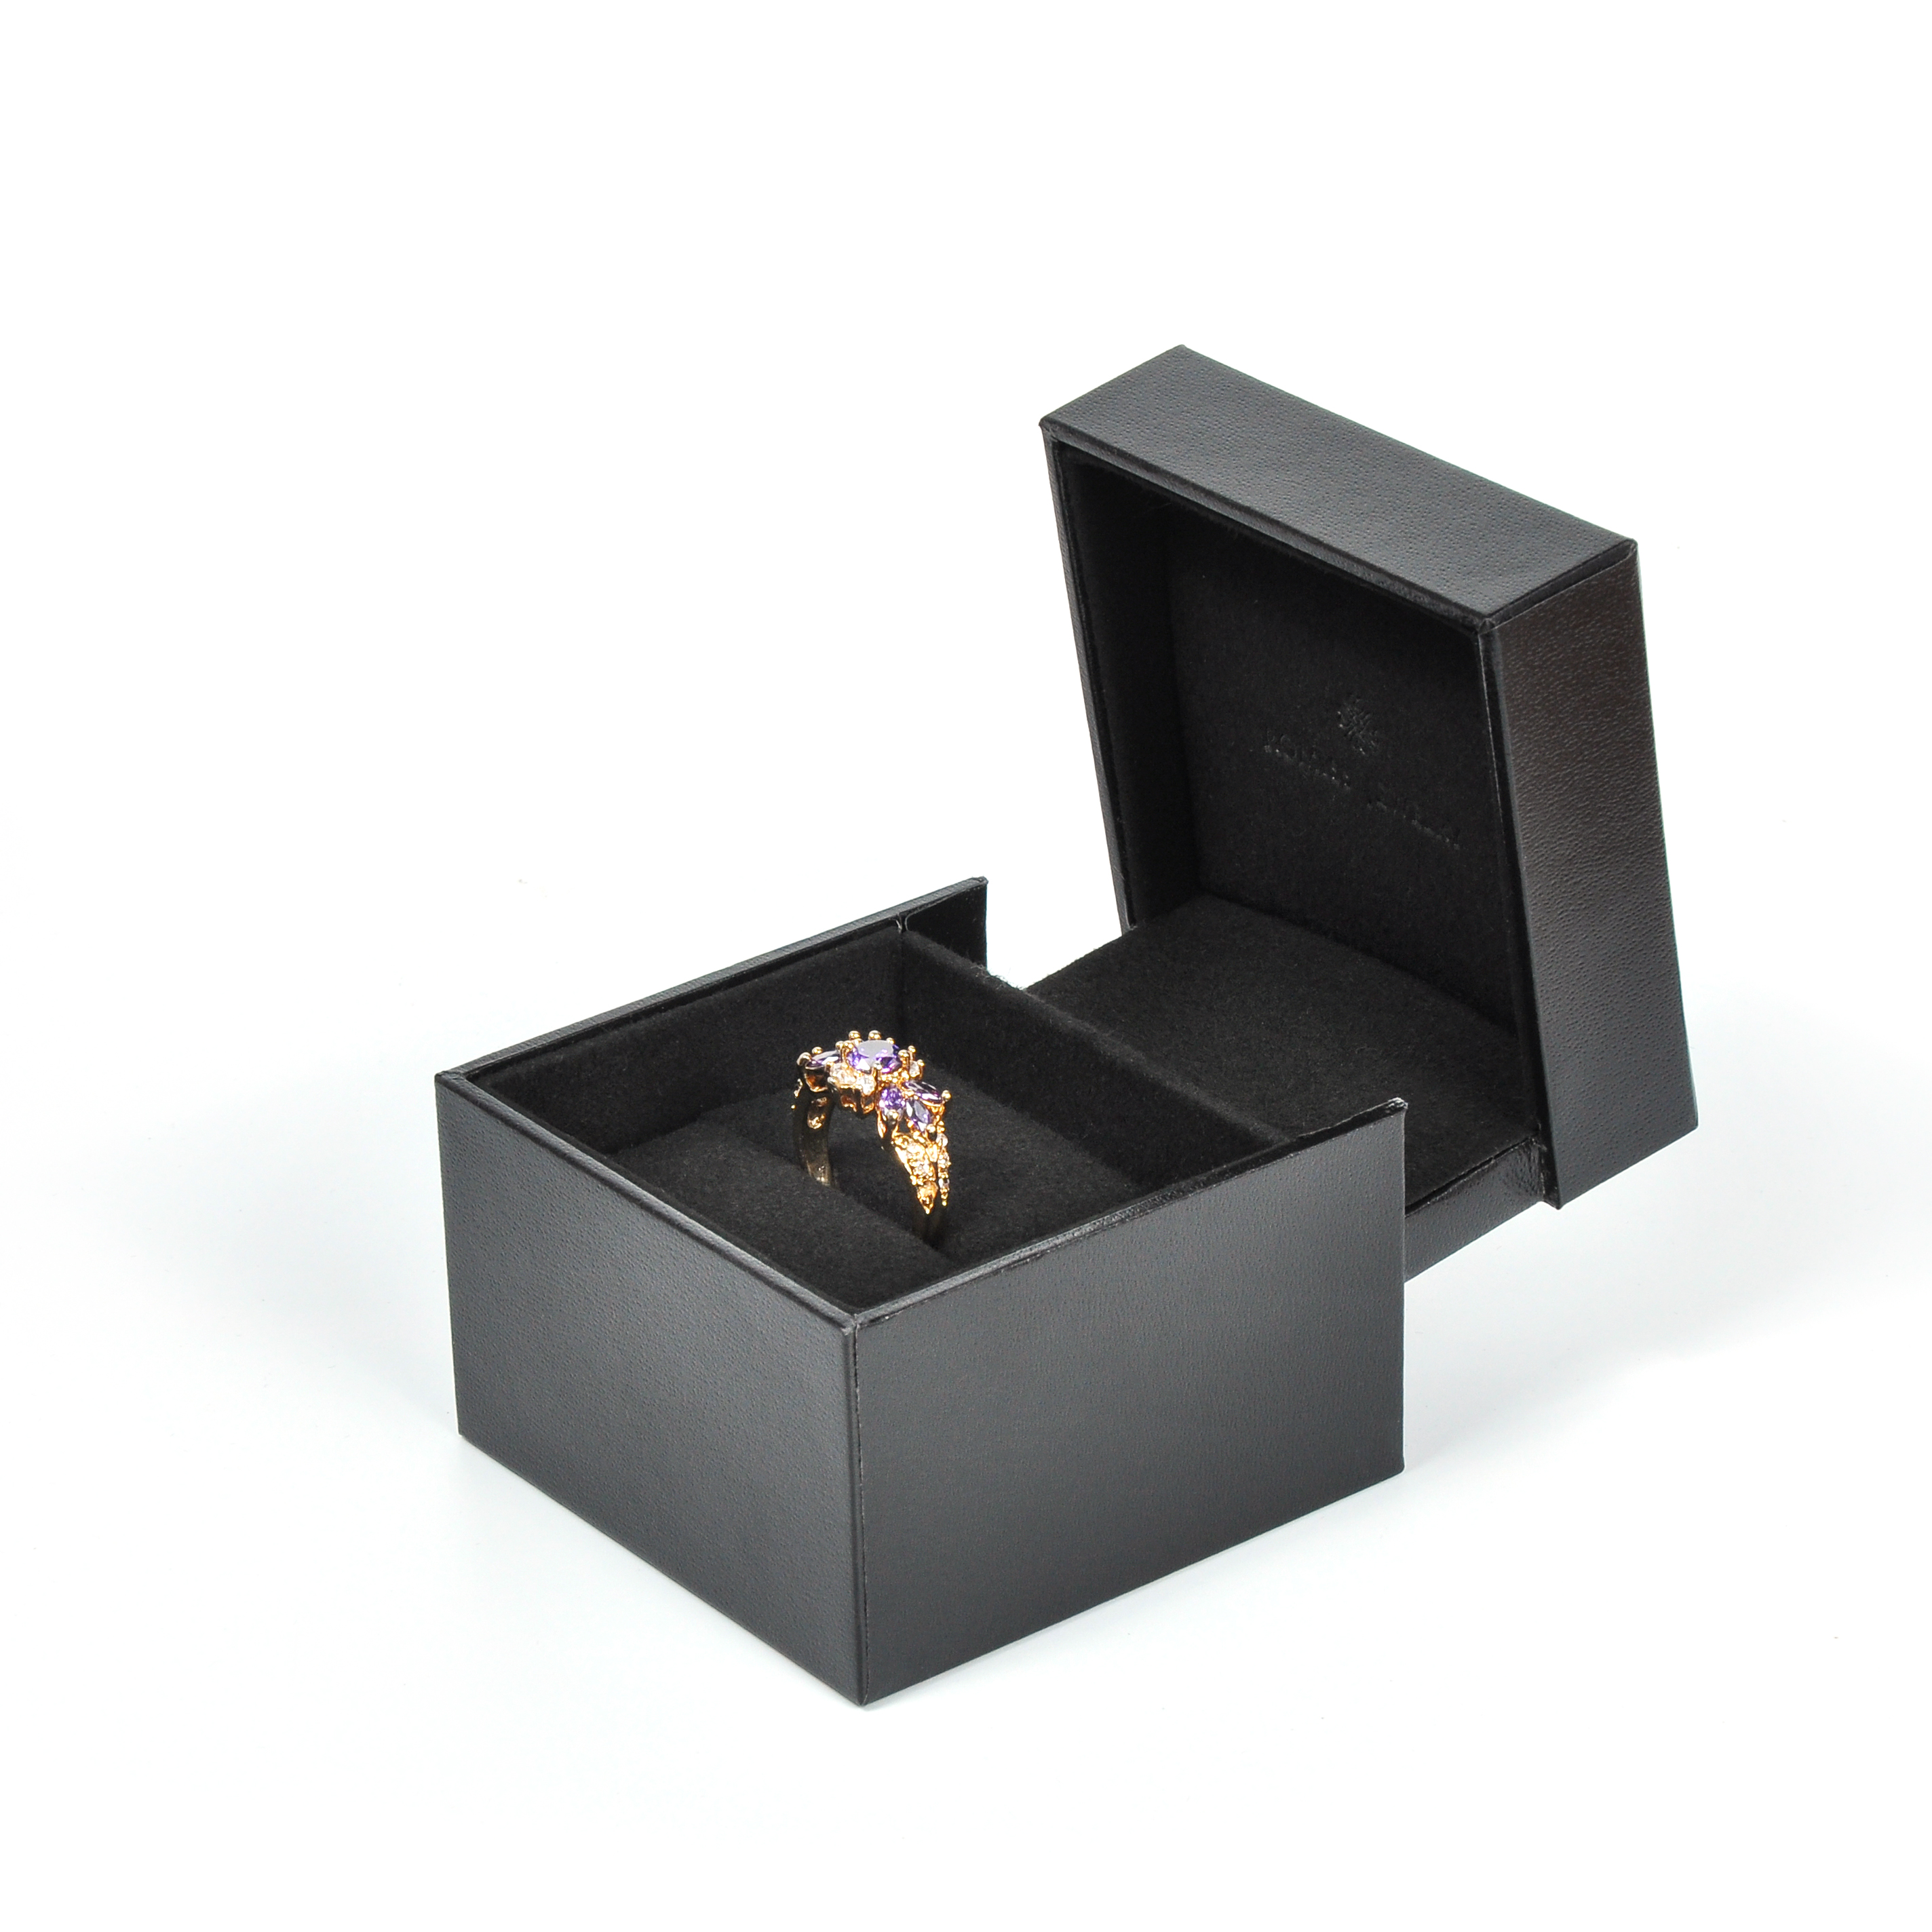 Popular Design sense wedding ring bespoke jewelry packaging propose box case caja